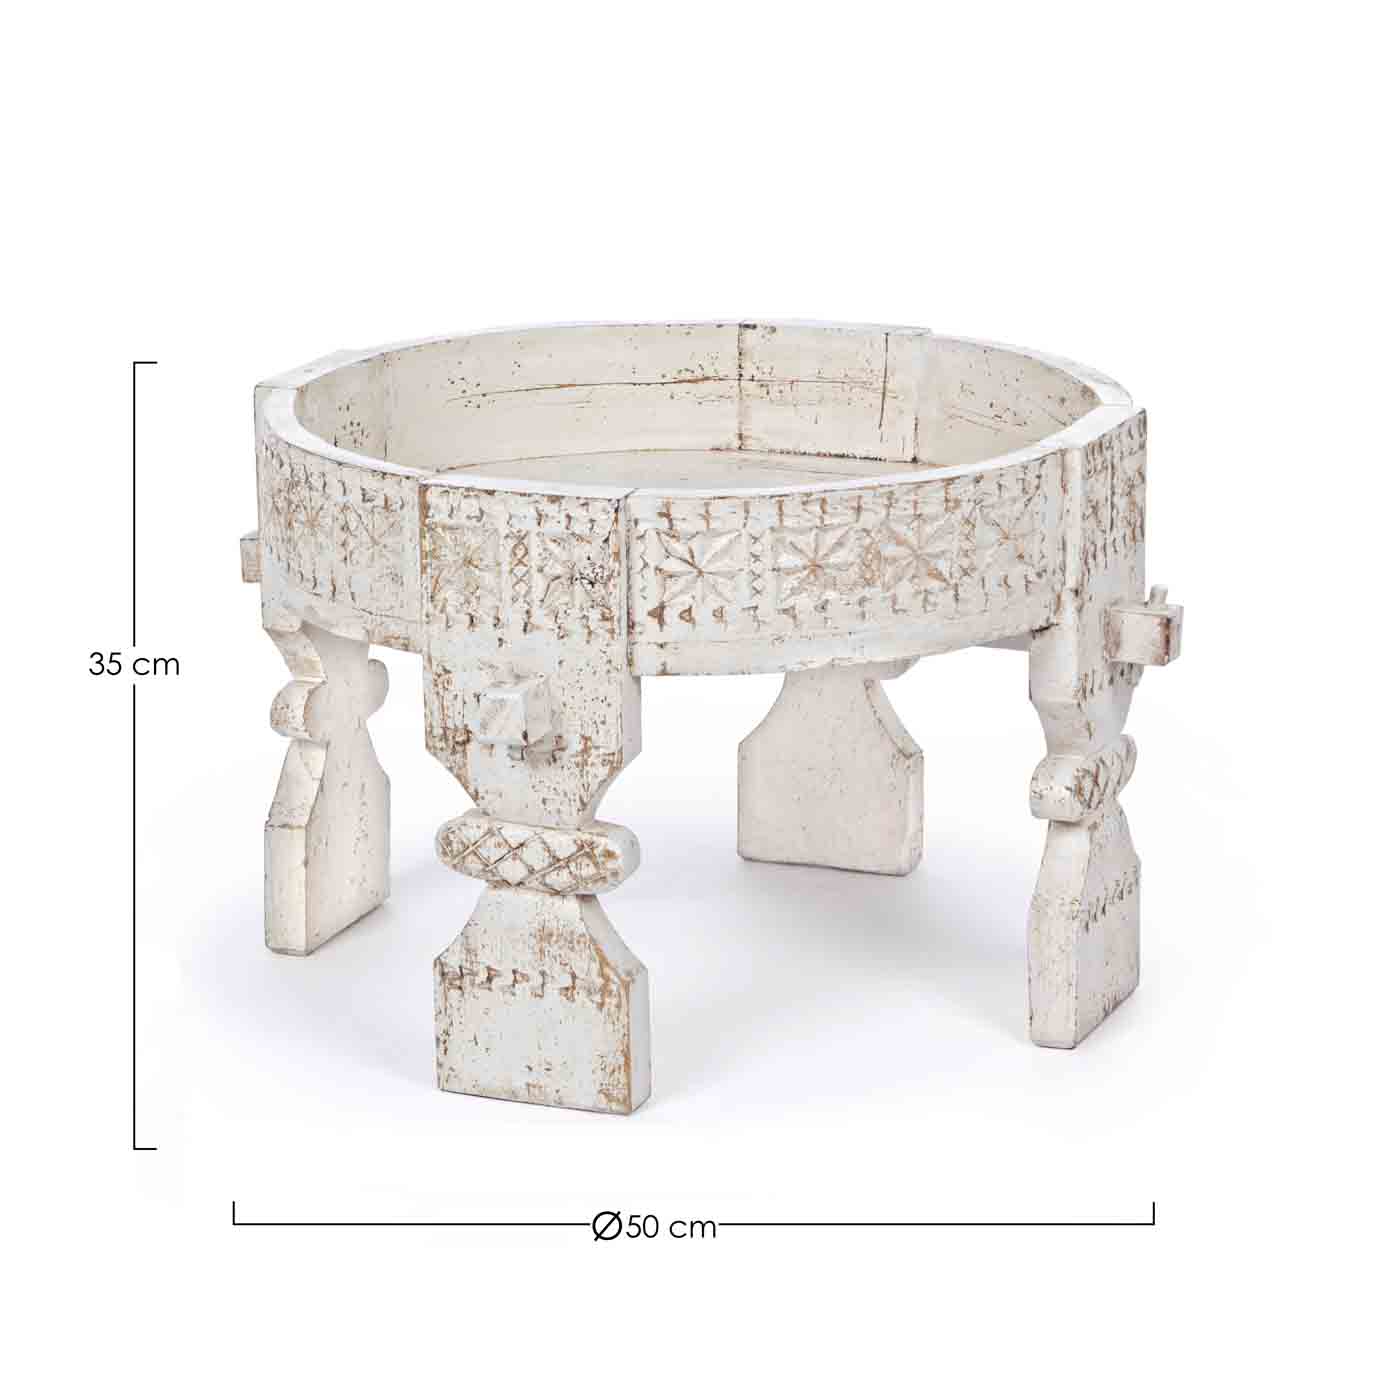 Das Skandinavische Design des Beistelltisches Yasir überzeugt. Gefertigt wurde der Tisch aus Mangoholz und hat per Hand eine Feinbearbeitung erhalten. Der Tisch ist in einem weißen Farbton.